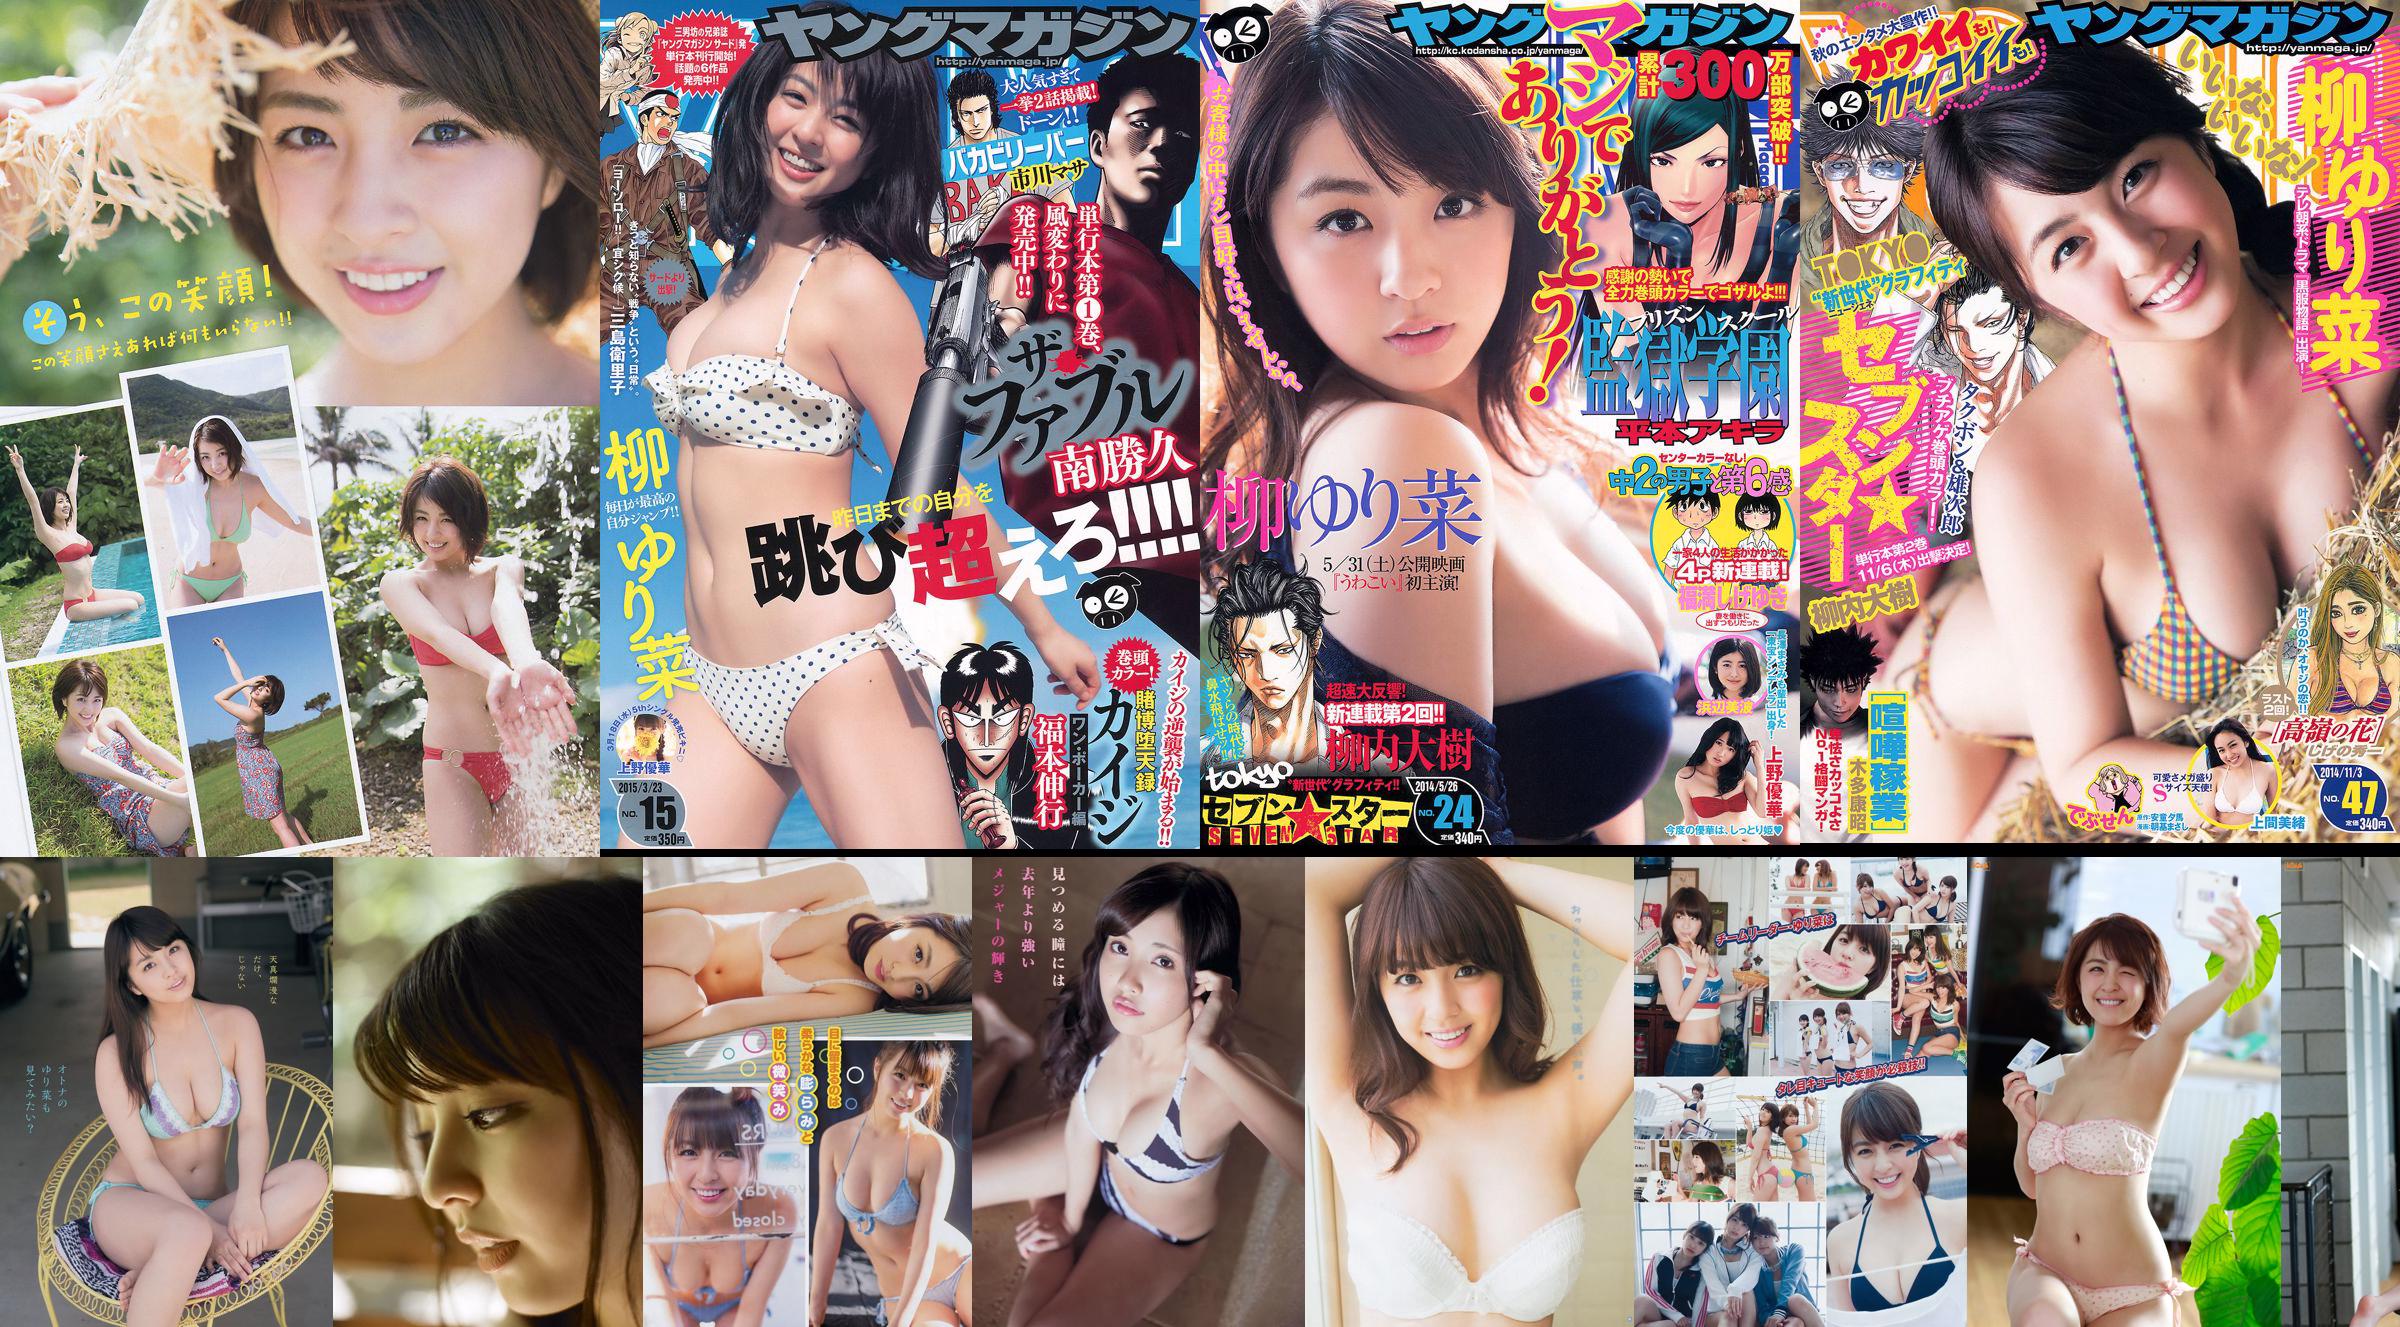 [Joven Campeona] Rina Yanagi Yuyoko Matsukawa 2015 No.04 Revista fotográfica No.ebaff6 Página 1